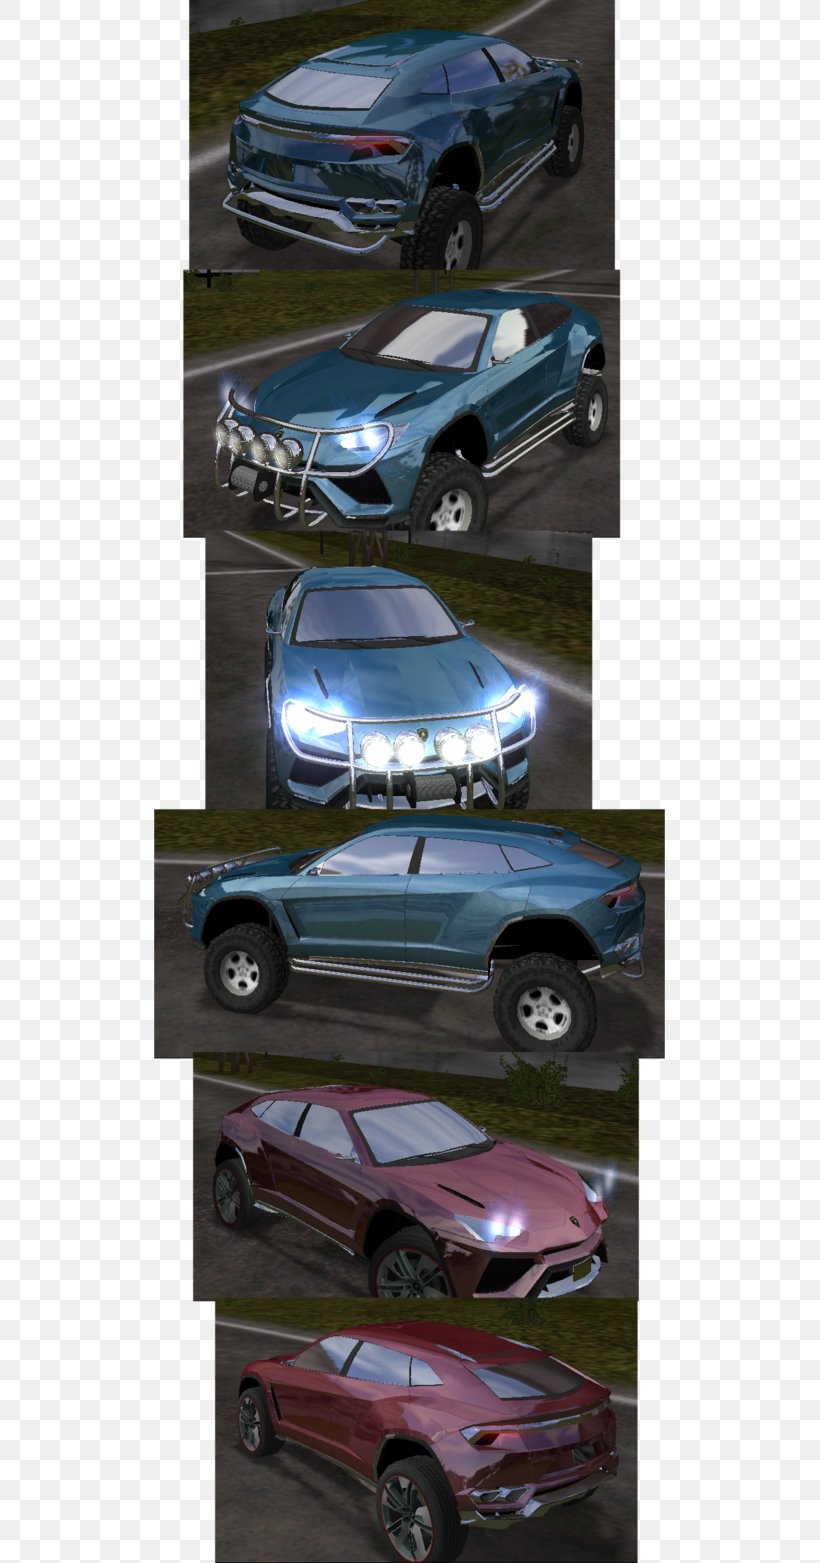 Bumper Mid-size Car Compact Car Luxury Vehicle, PNG, 511x1563px, Bumper, Auto Part, Automotive Design, Automotive Exterior, Automotive Lighting Download Free